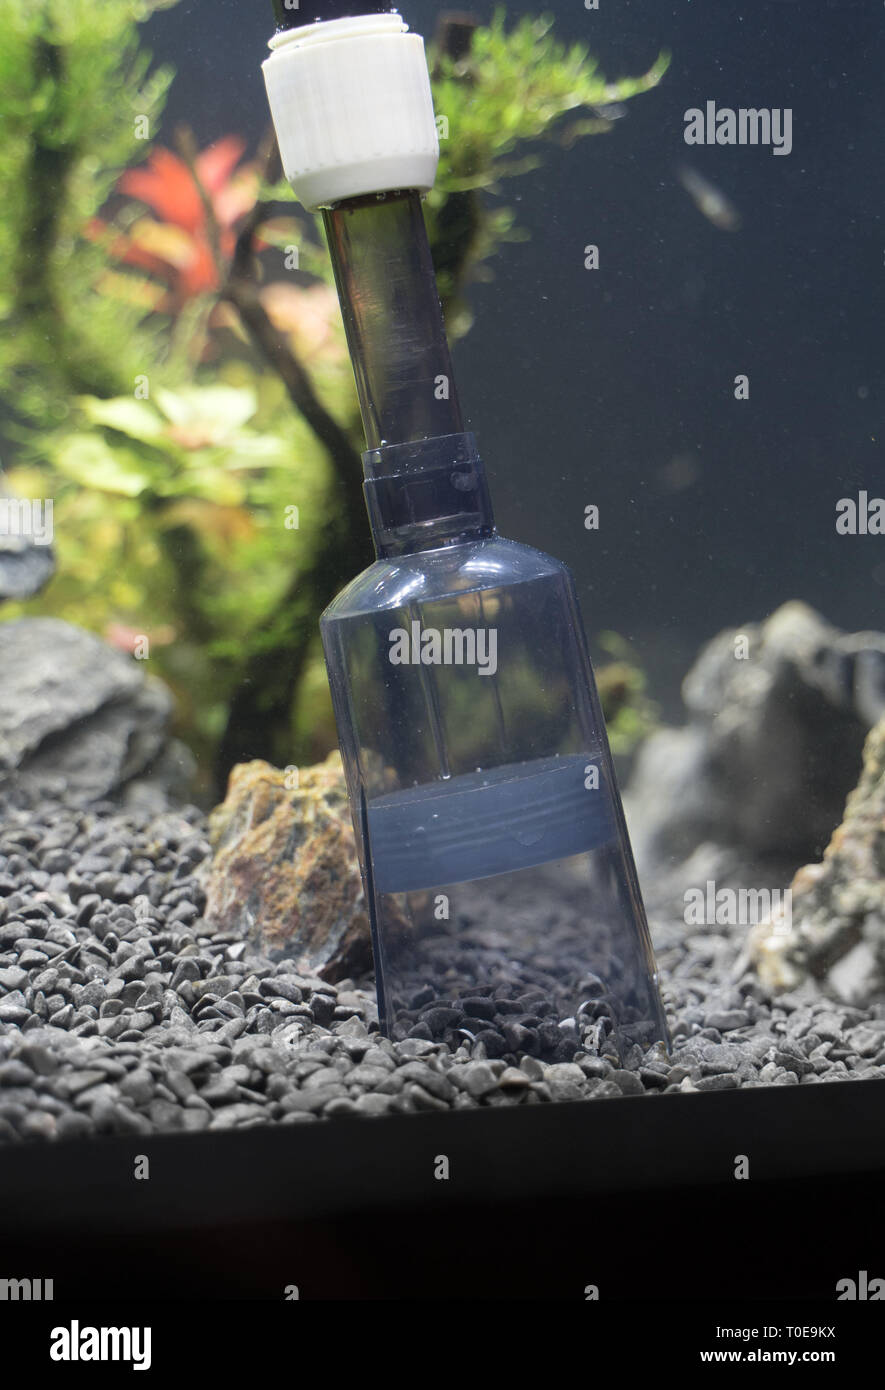 Siphon gravel cleaner tool in the aquarium. Stock Photo